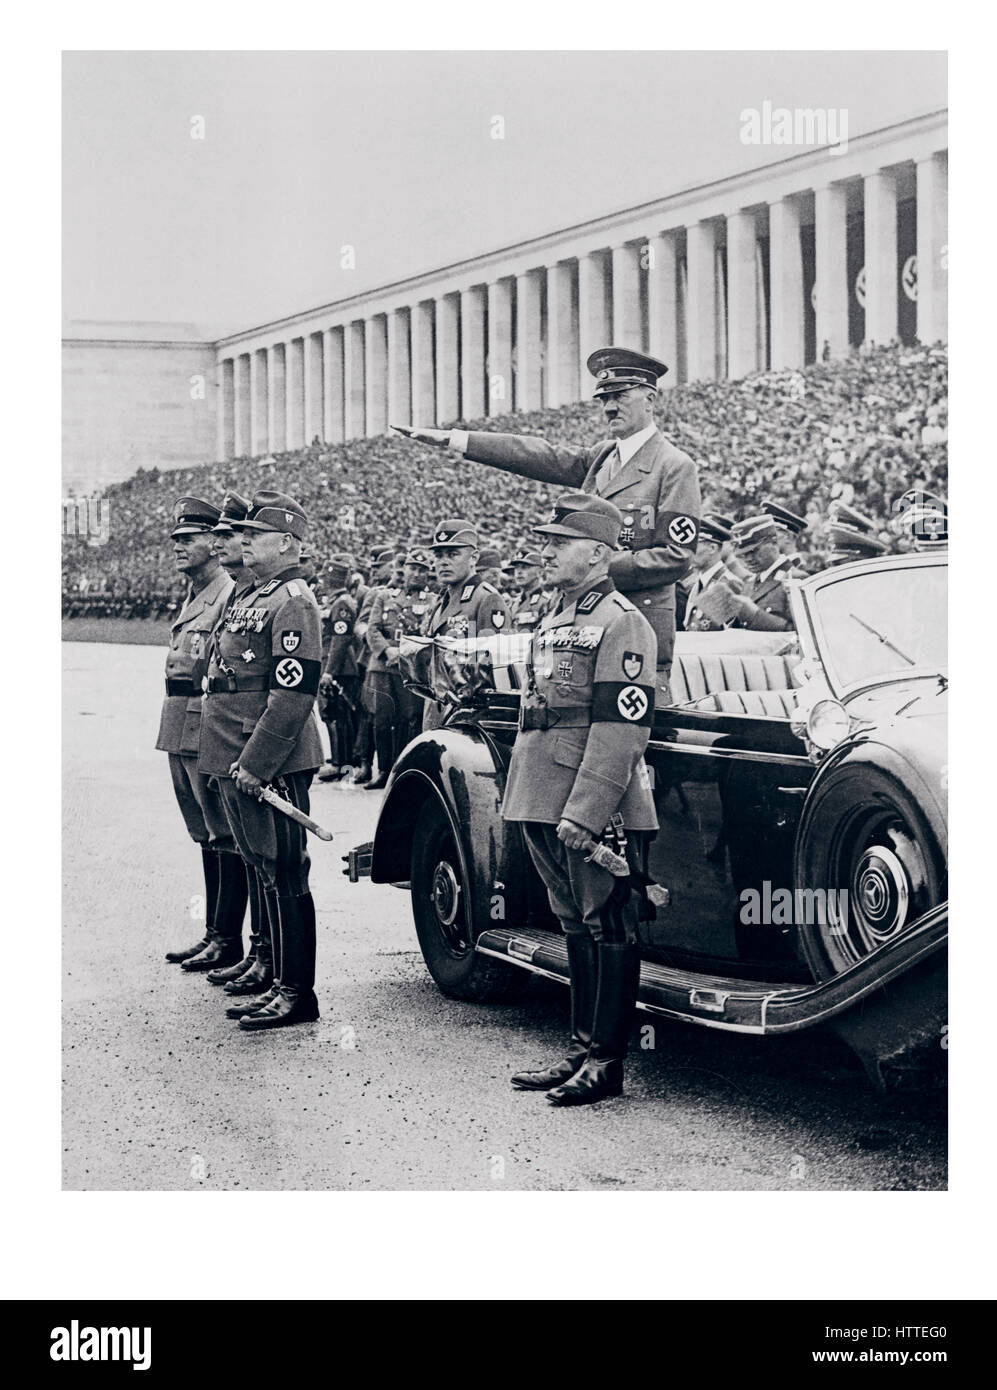 NÜRNBERGER KUNDGEBUNG 1930er-Kanzler Adolf Hitler in Uniform mit Hakenkreuzarmband, stehend in seinem Mercedes-Auto, grüßend Mitglieder des Arbeiterkorps, während sie während einer Überprüfung auf Nürnberg Zeppelin Feld, Teil der Zeremonien des jährlichen Nazi-Parteikongresses marschieren. Stockfoto